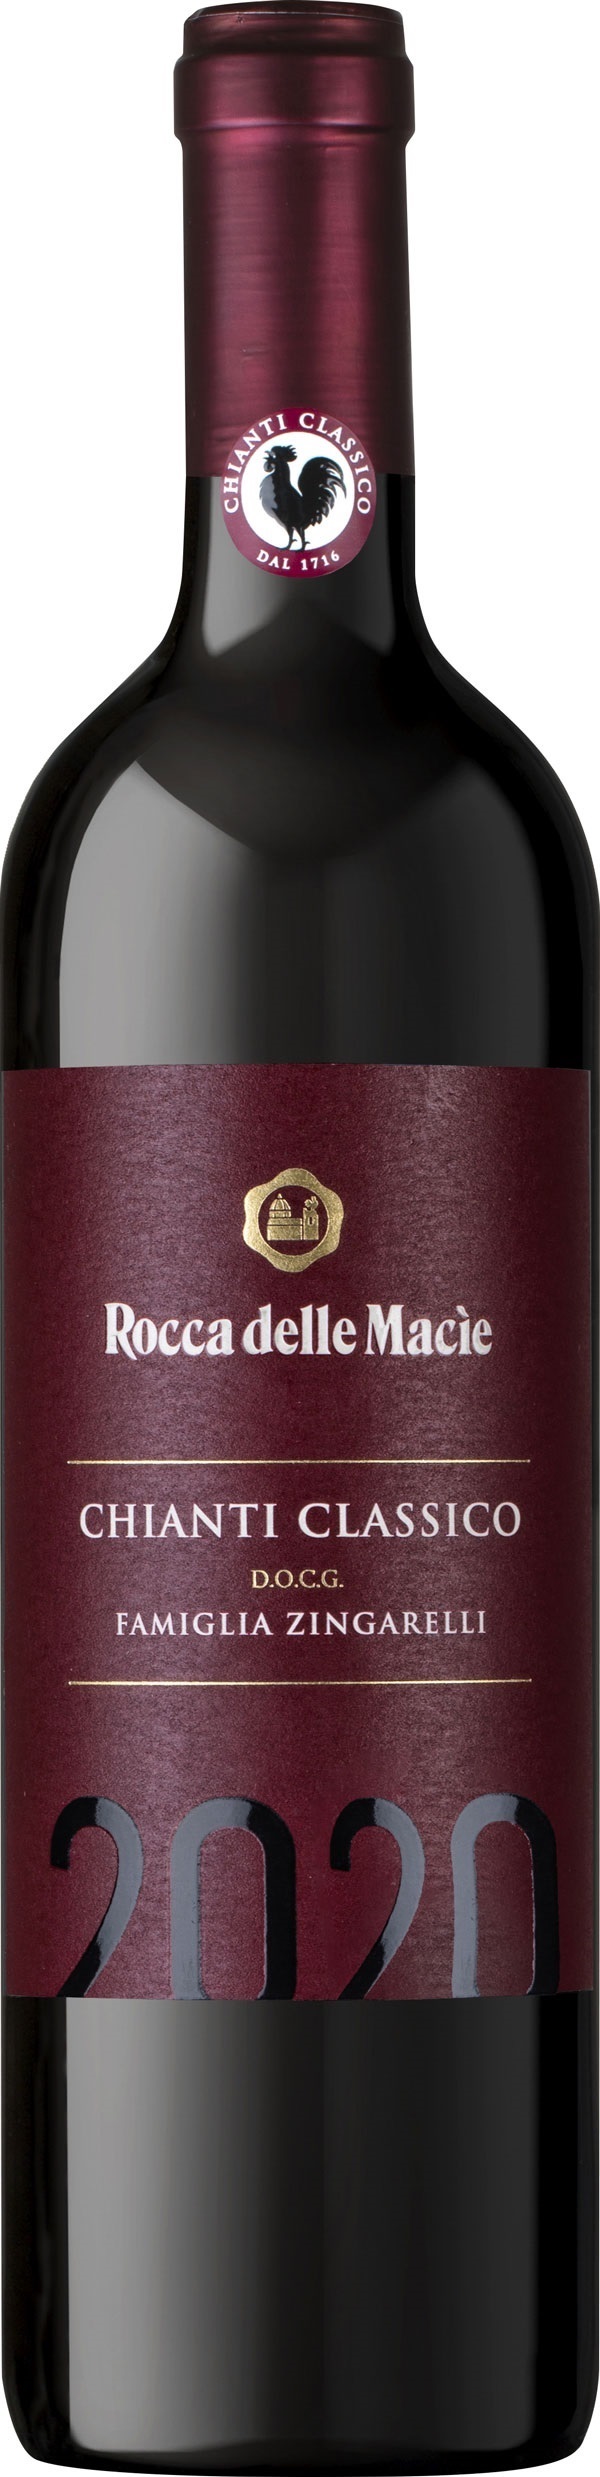 Rocca delle Macìe Famiglia Zingarelli Chianti Classico halbe Flasche 2021 0.375 l Toskana Rotwein